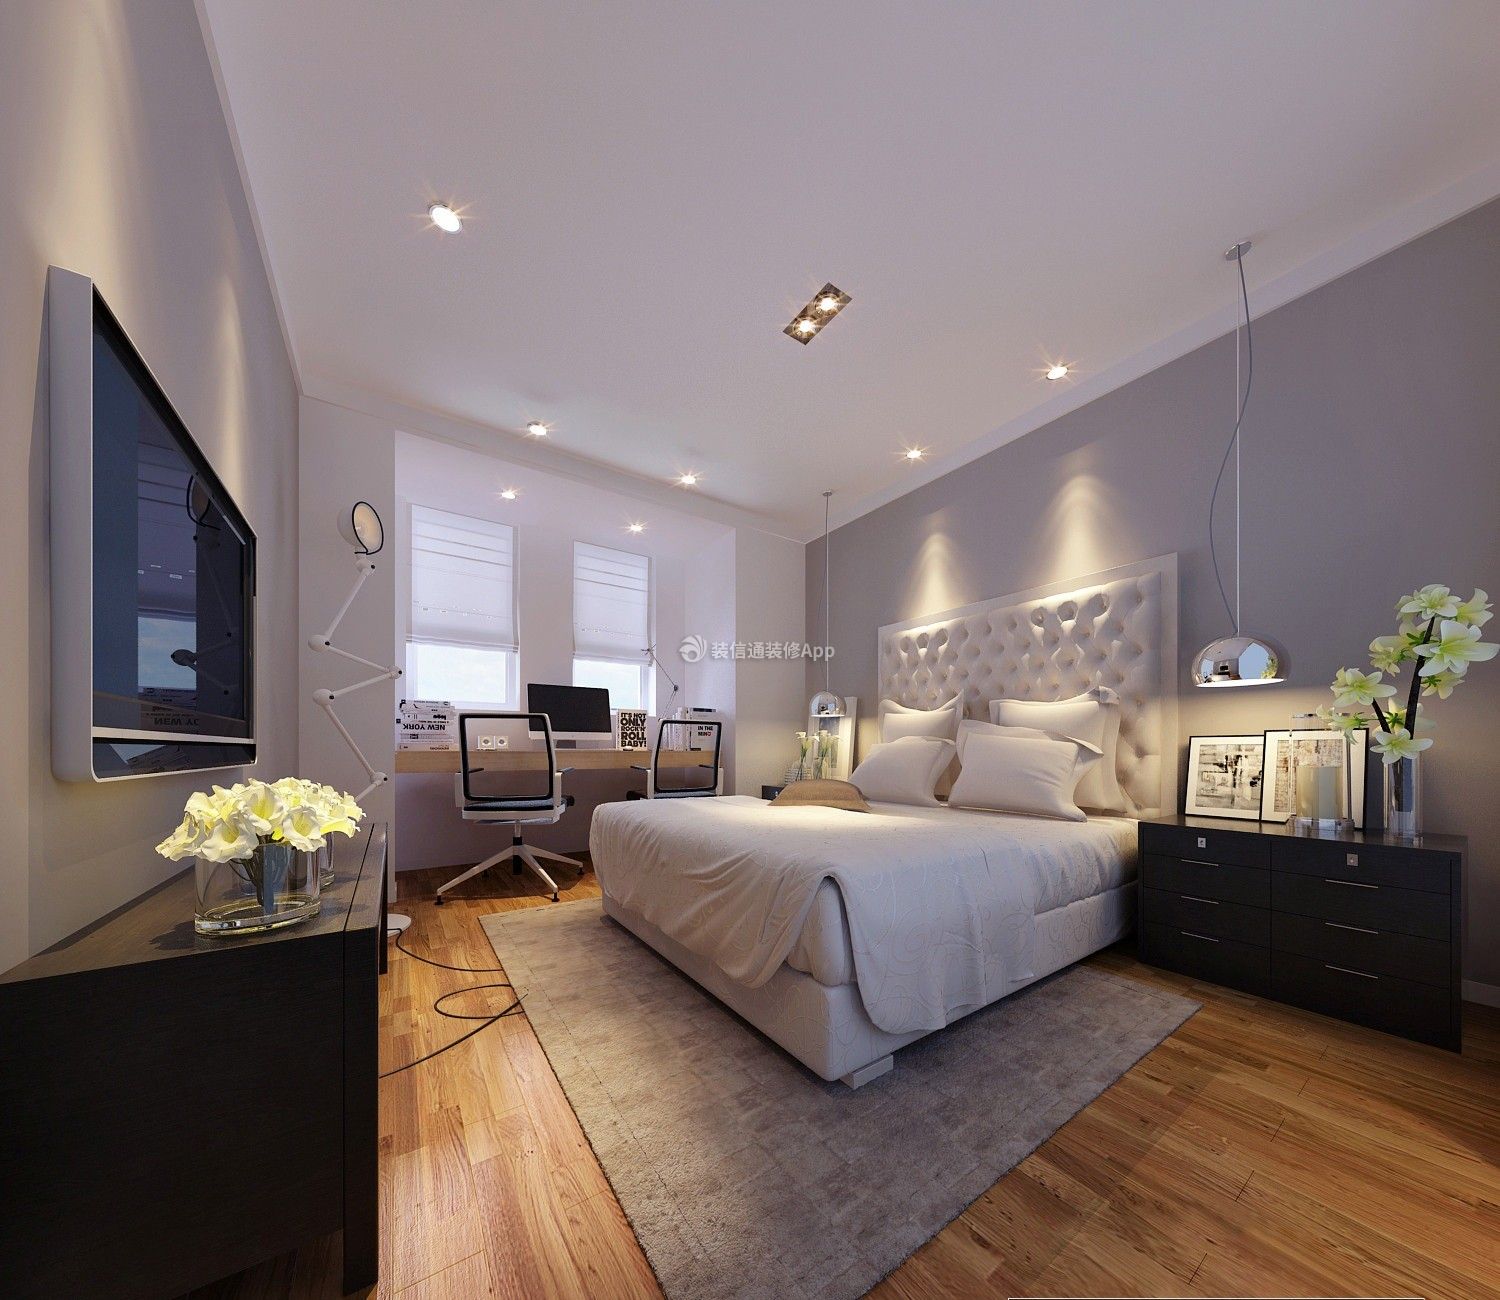 2020欧式卧室设计图片大全 欧式卧室背景图片 欧式卧室布置 